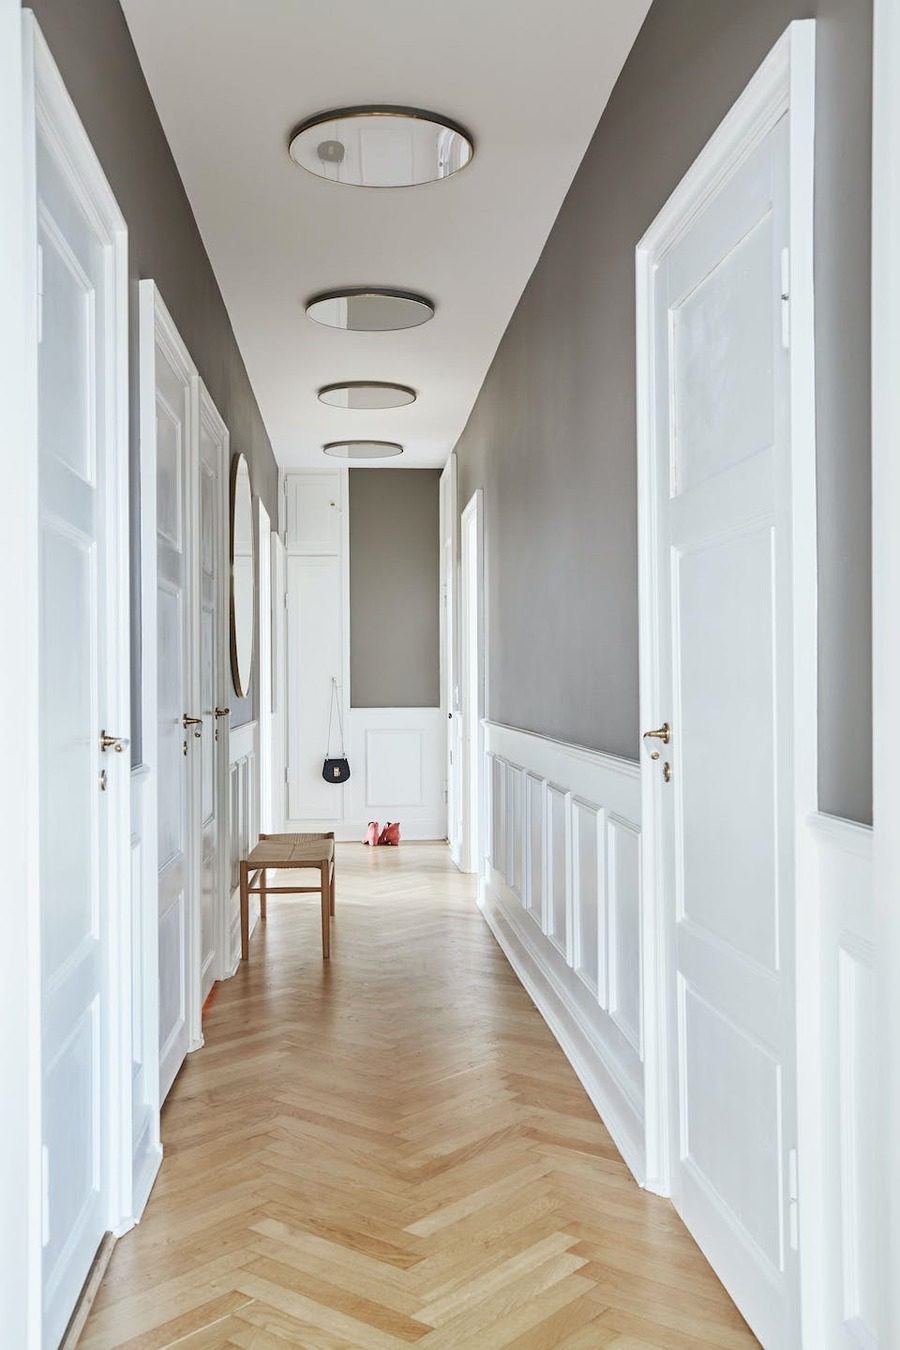 Largo pasillo de piso de madera, techo blanco con plafones tipo espejo y paredes grises con molduras blancas. Las puertas también son blancas.